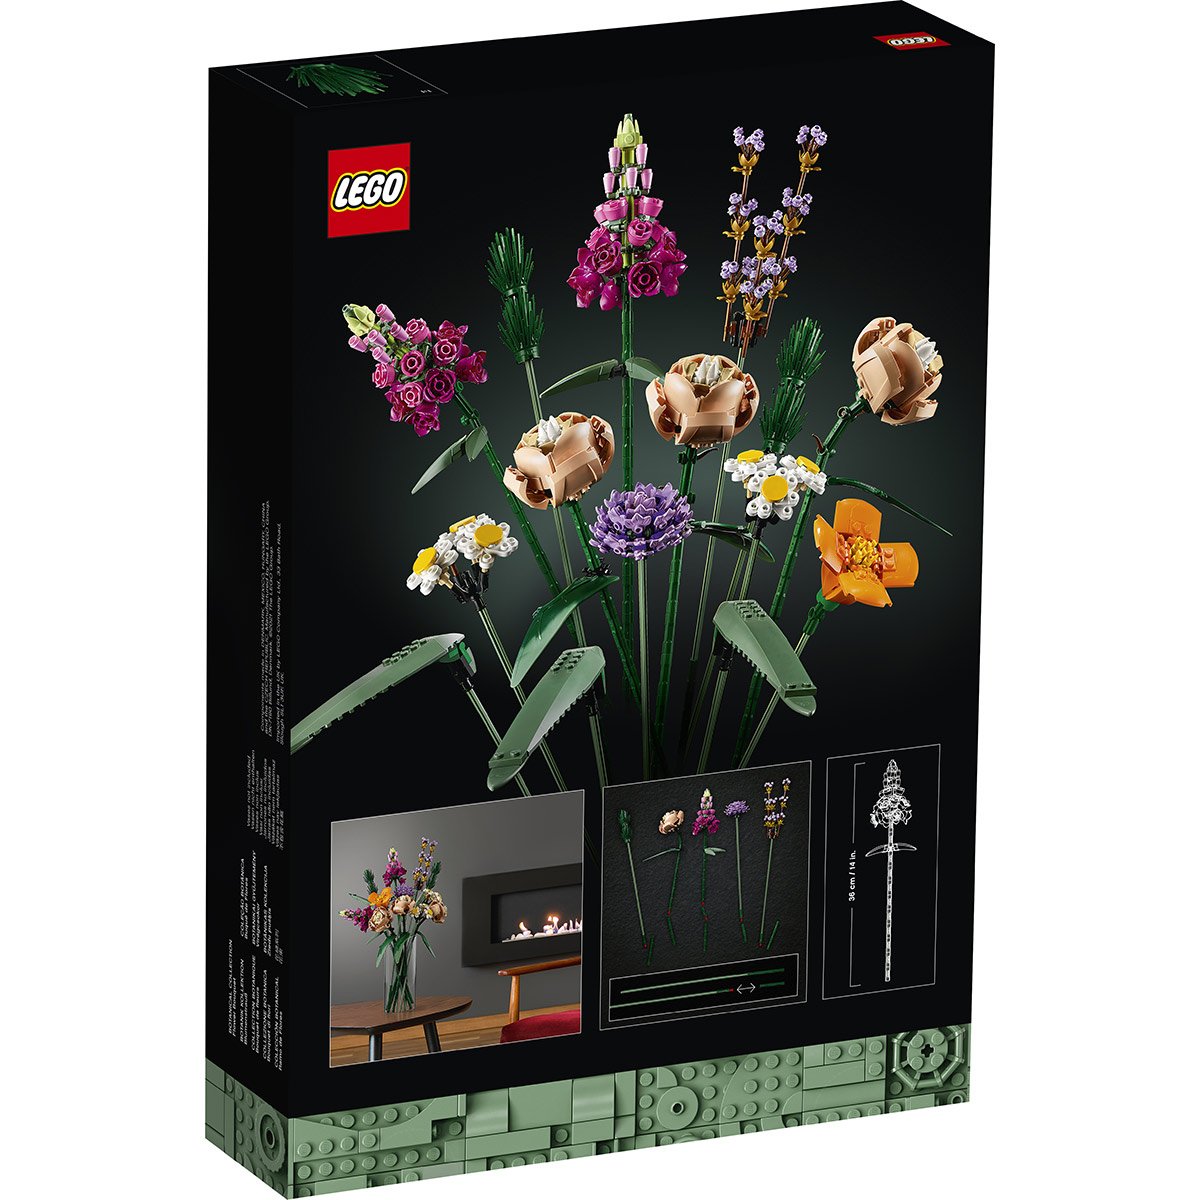 Ce bouquet de fleurs Lego fait fureur sur ce site et vu son prix